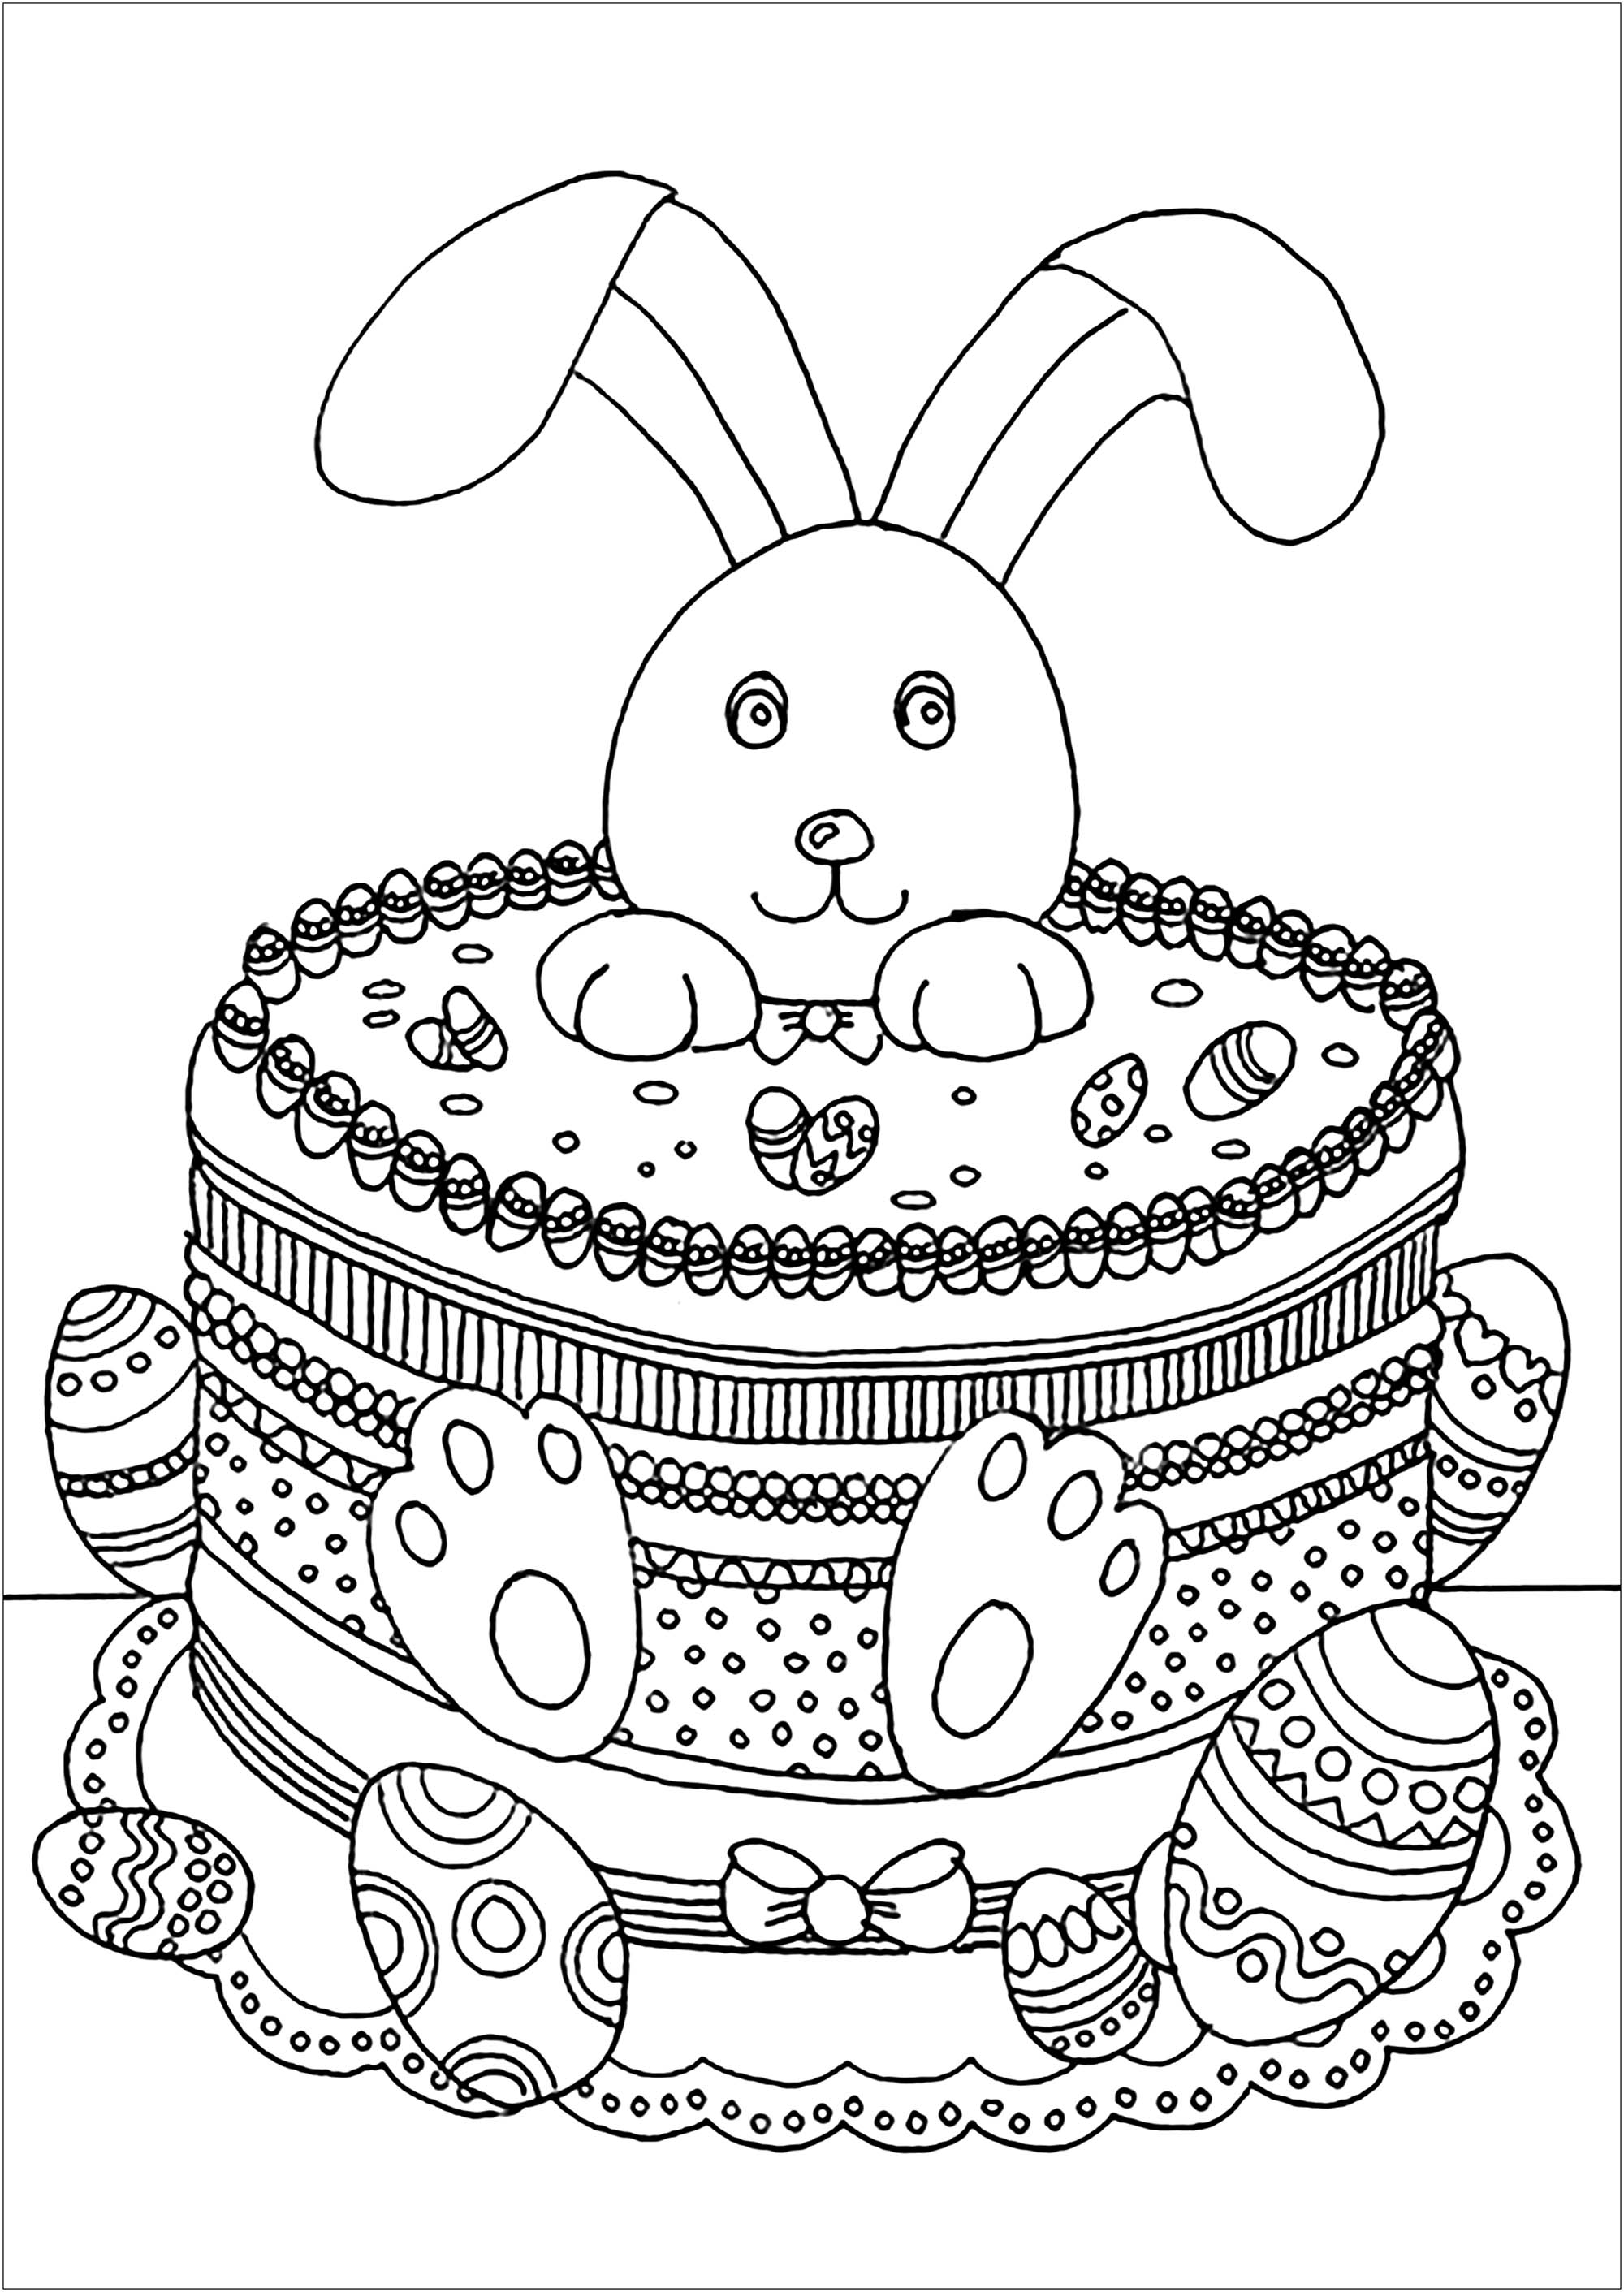 Coelho da Páscoa engraçado num bolo, com ovos para colorir